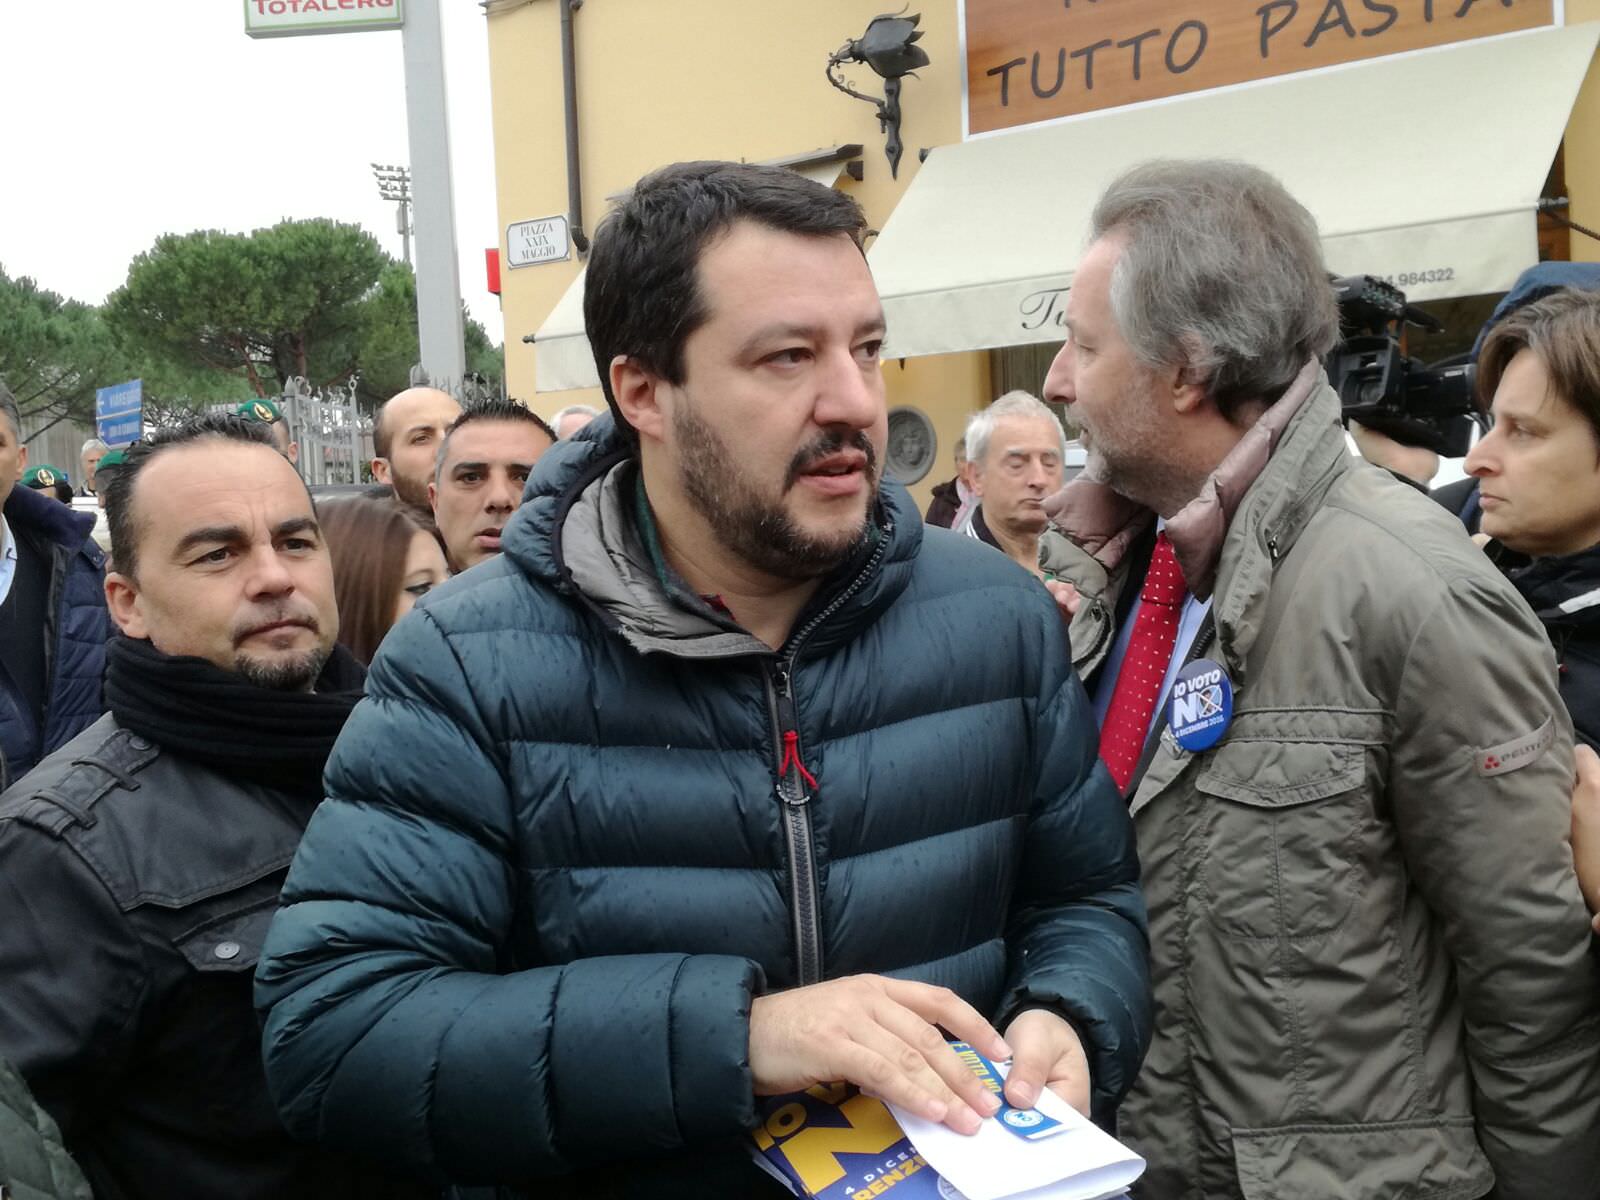 Matteo Salvini in Versilia: “Votate no, per non essere schiavi di Bruxelles”